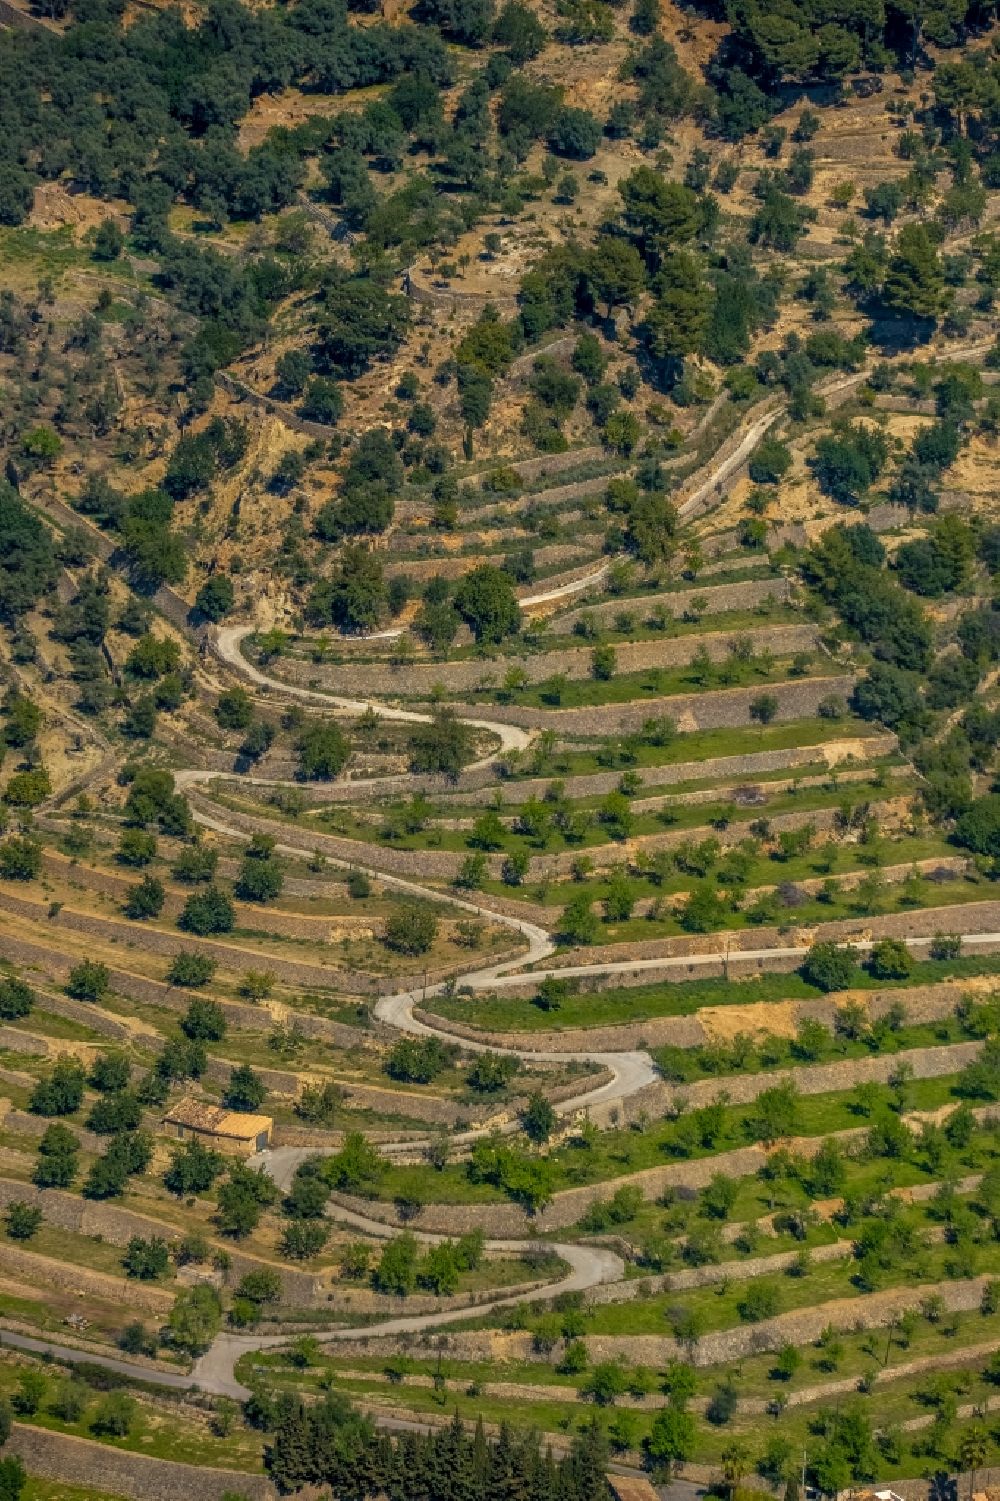 Bunyola von oben - Serpentinenförmiger Kurvenverlauf einer Straßenführung in Bunyola in Balearische Insel Mallorca, Spanien